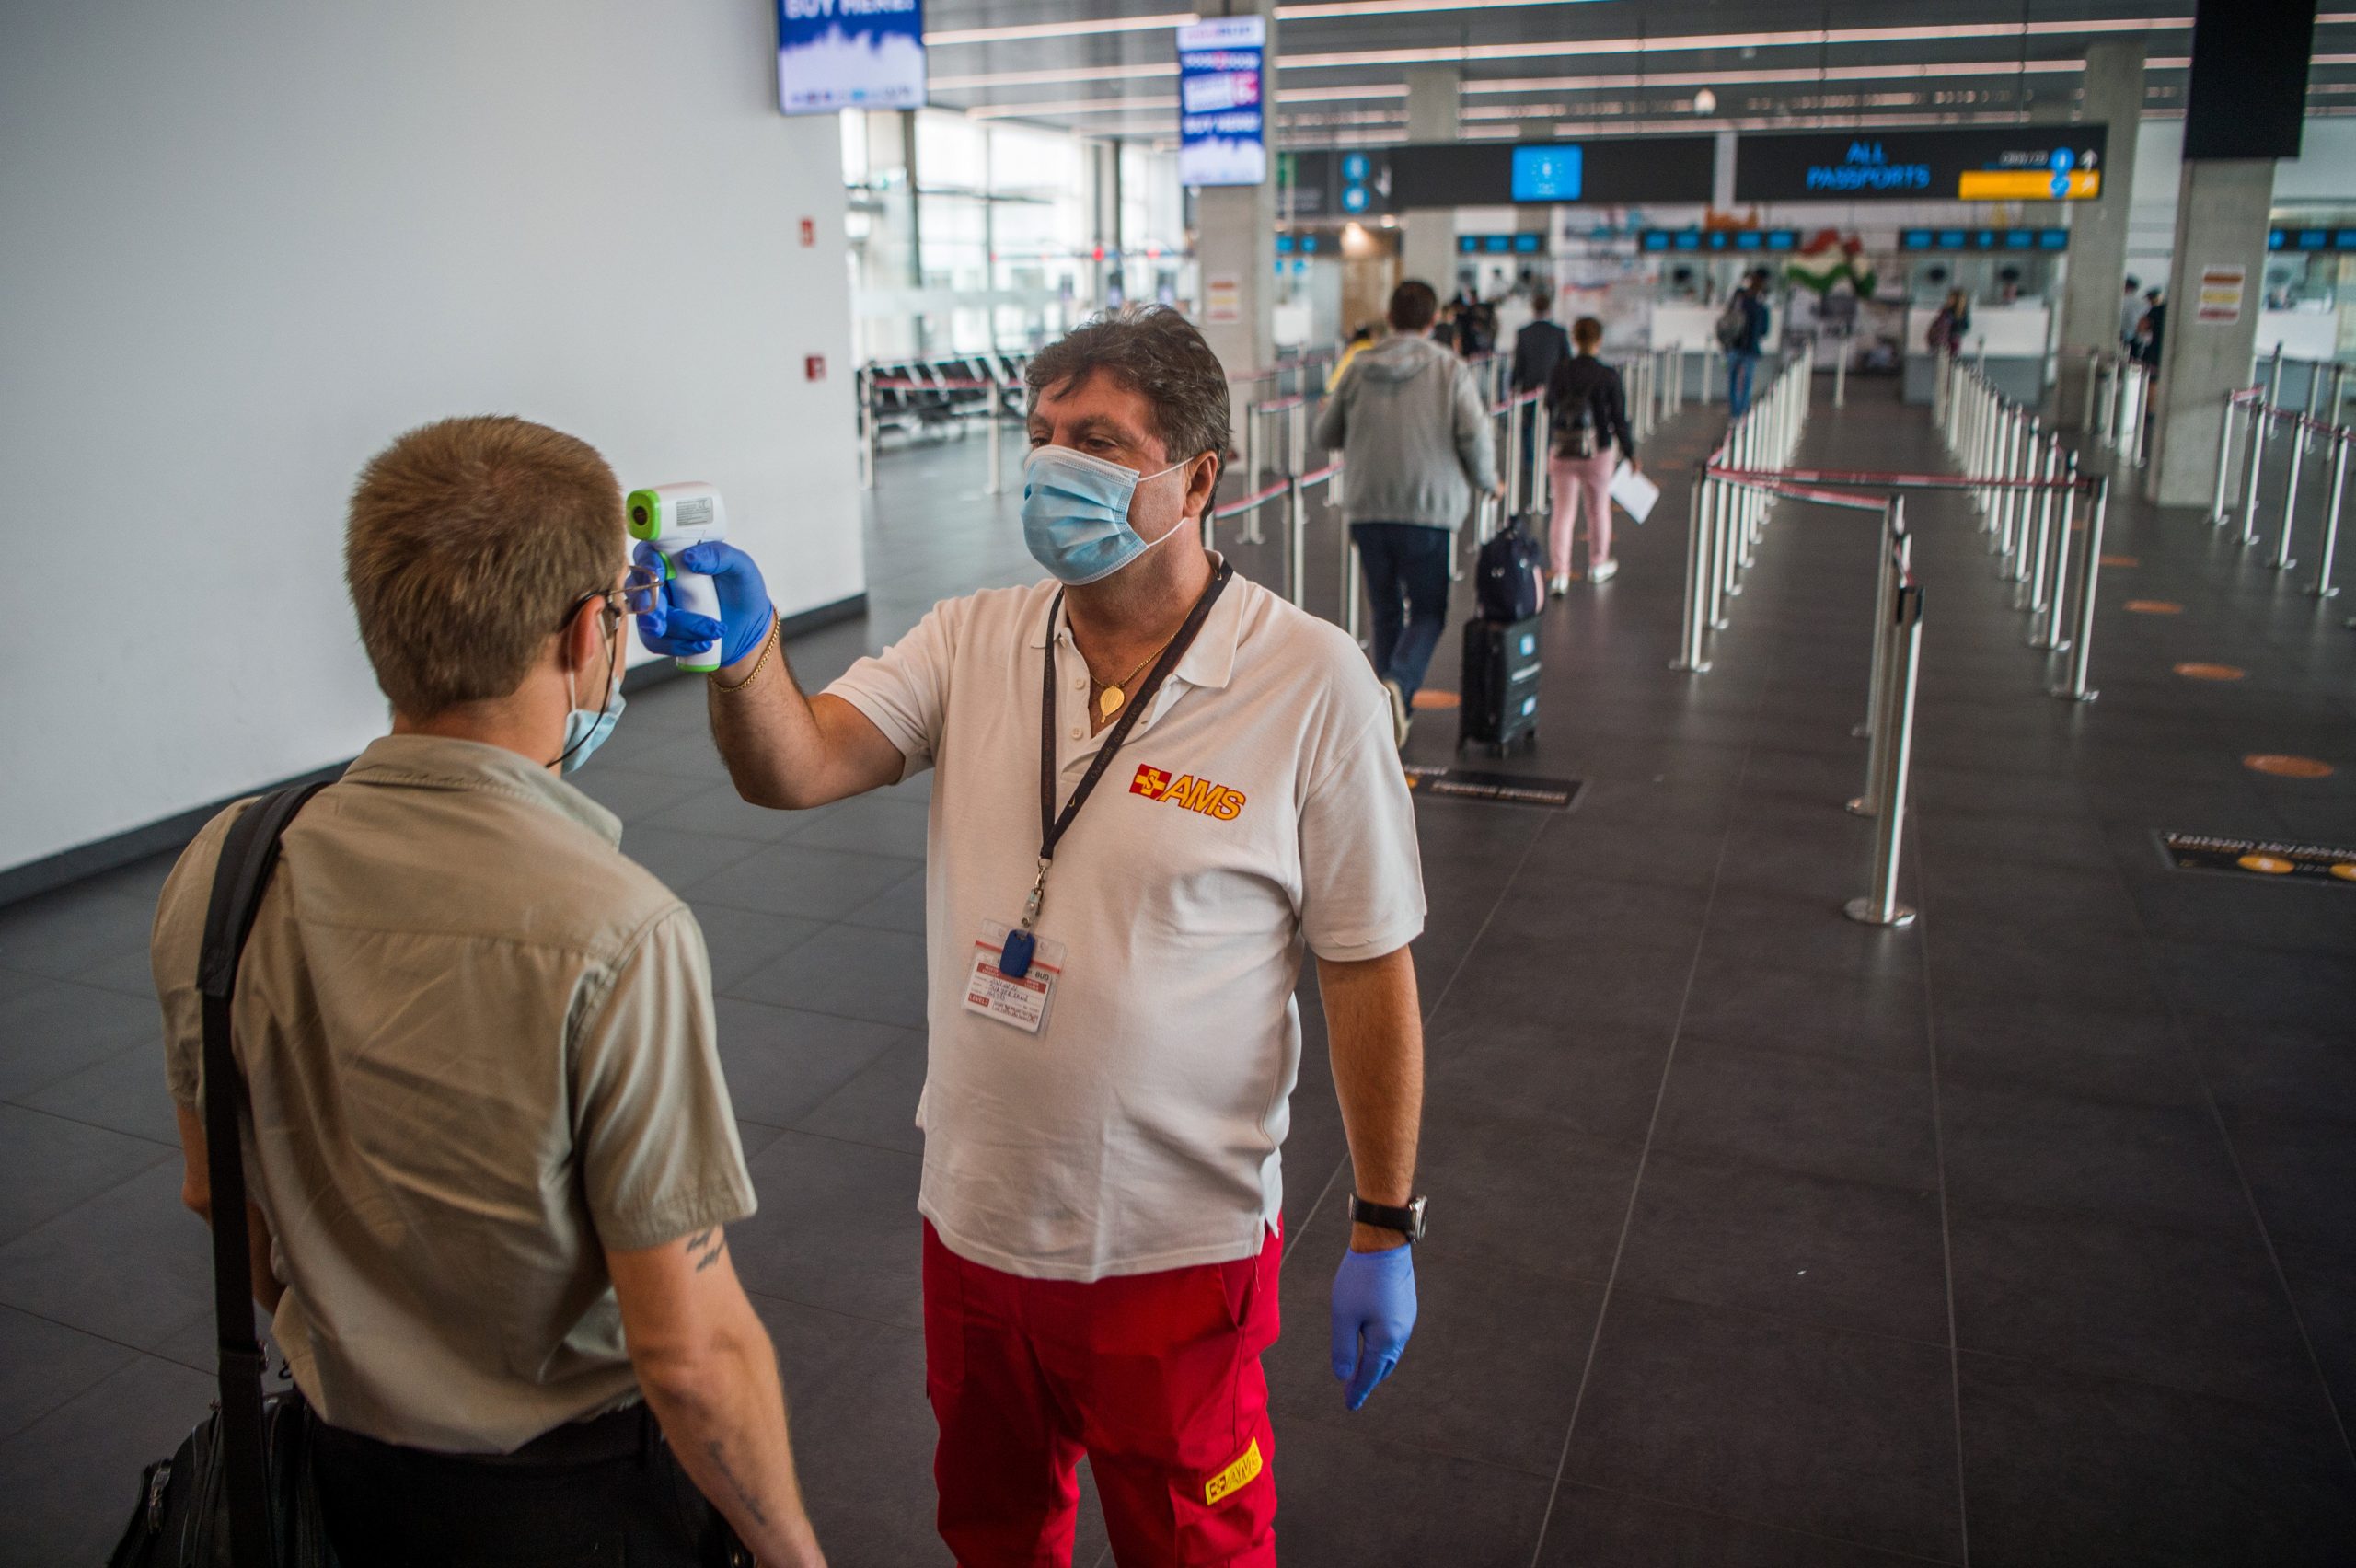 Coronavirus Testing Center to Open at Budapest Airport?